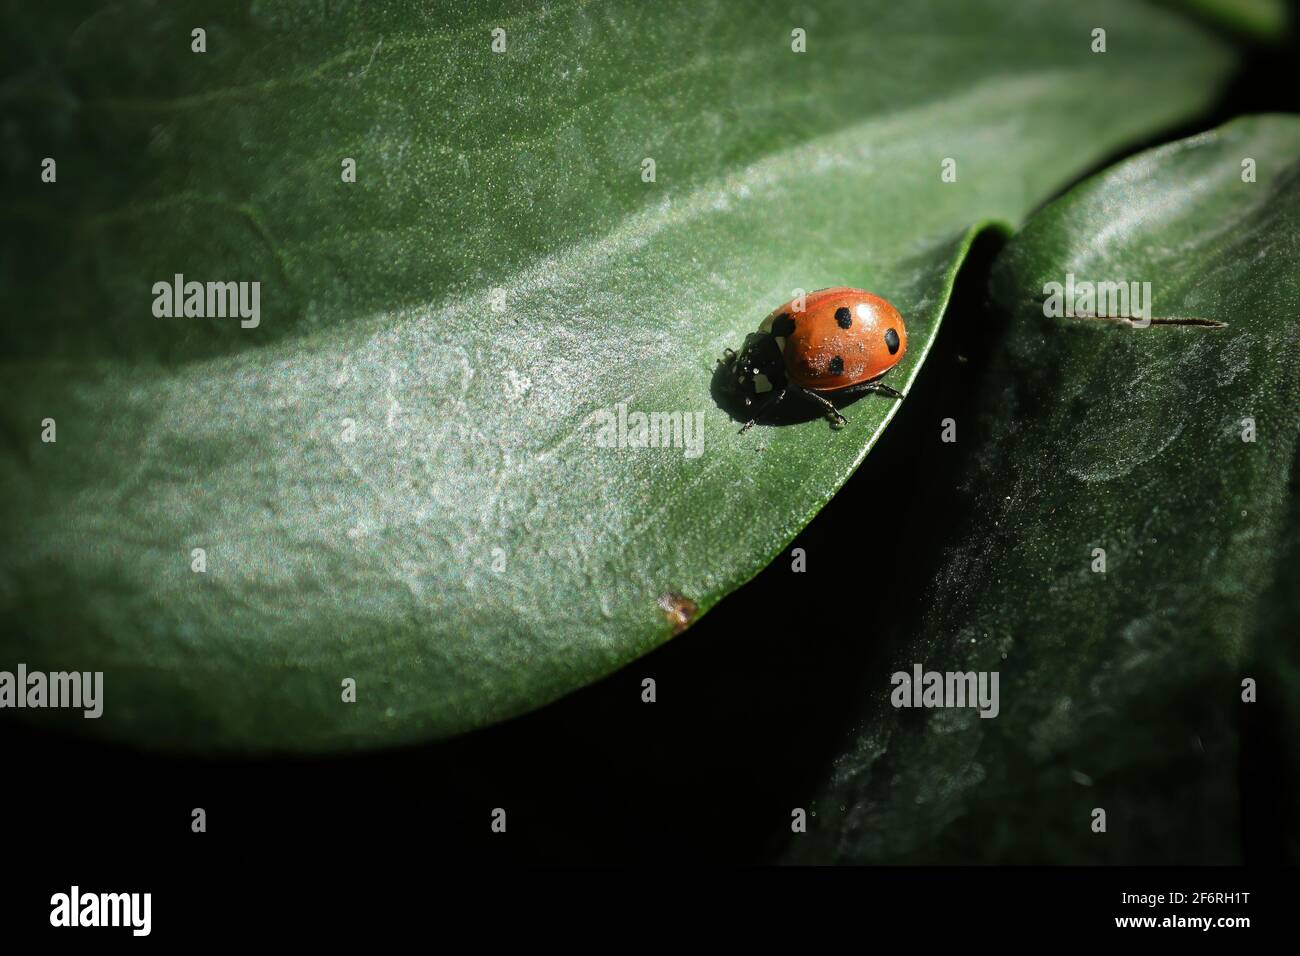 Sfondo di un ladybug su una foglia verde liscia Foto Stock